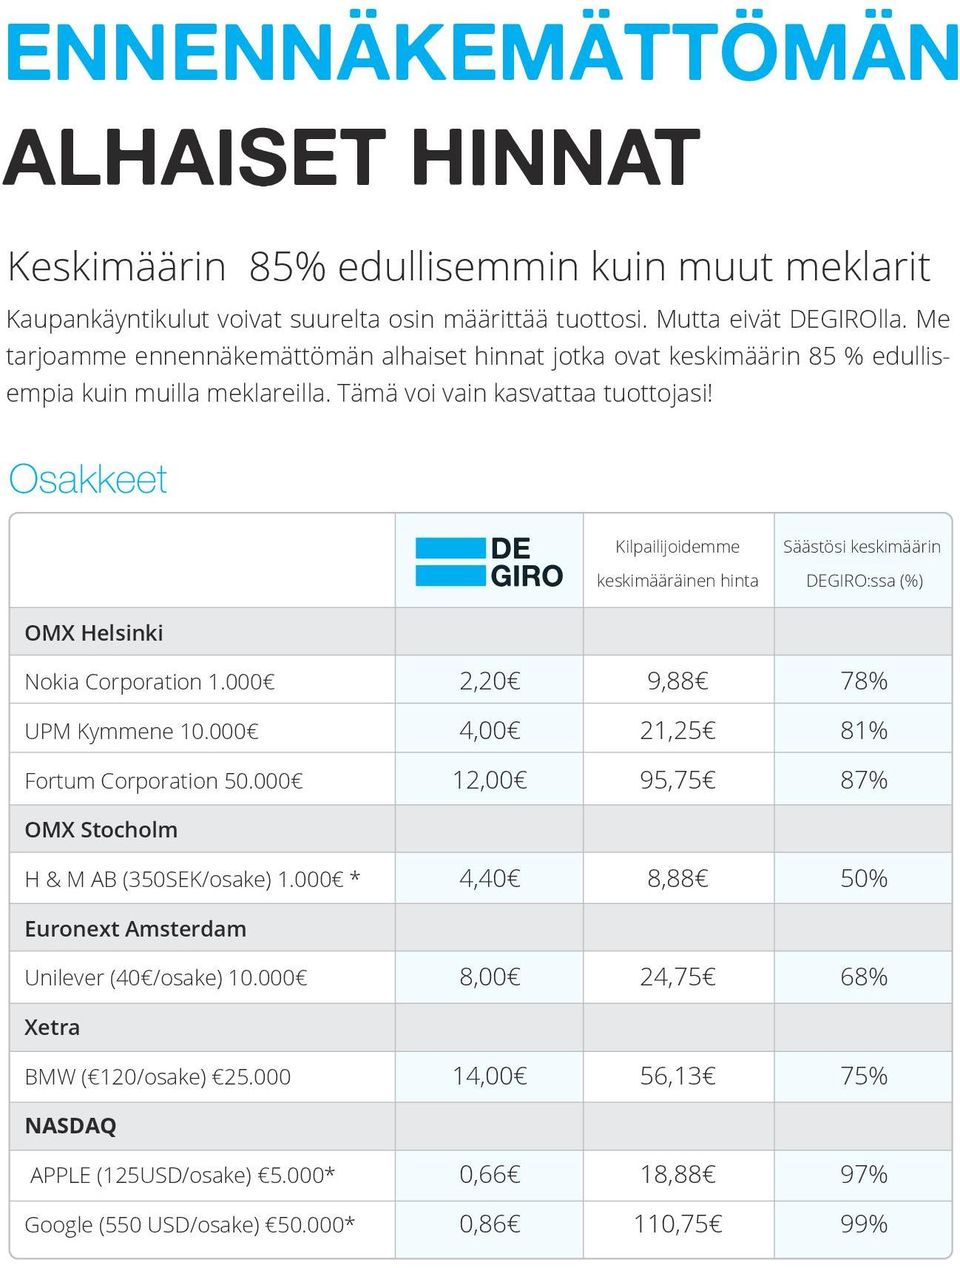 Osakkeet Kilpailijoidemme keskimääräinen hinta Säästösi keskimäärin DEGIRO:ssa (%) OMX Helsinki Nokia Corporation 1.000 2,20 9,88 78% UPM Kymmene 10.000 4,00 21,25 81% Fortum Corporation 50.